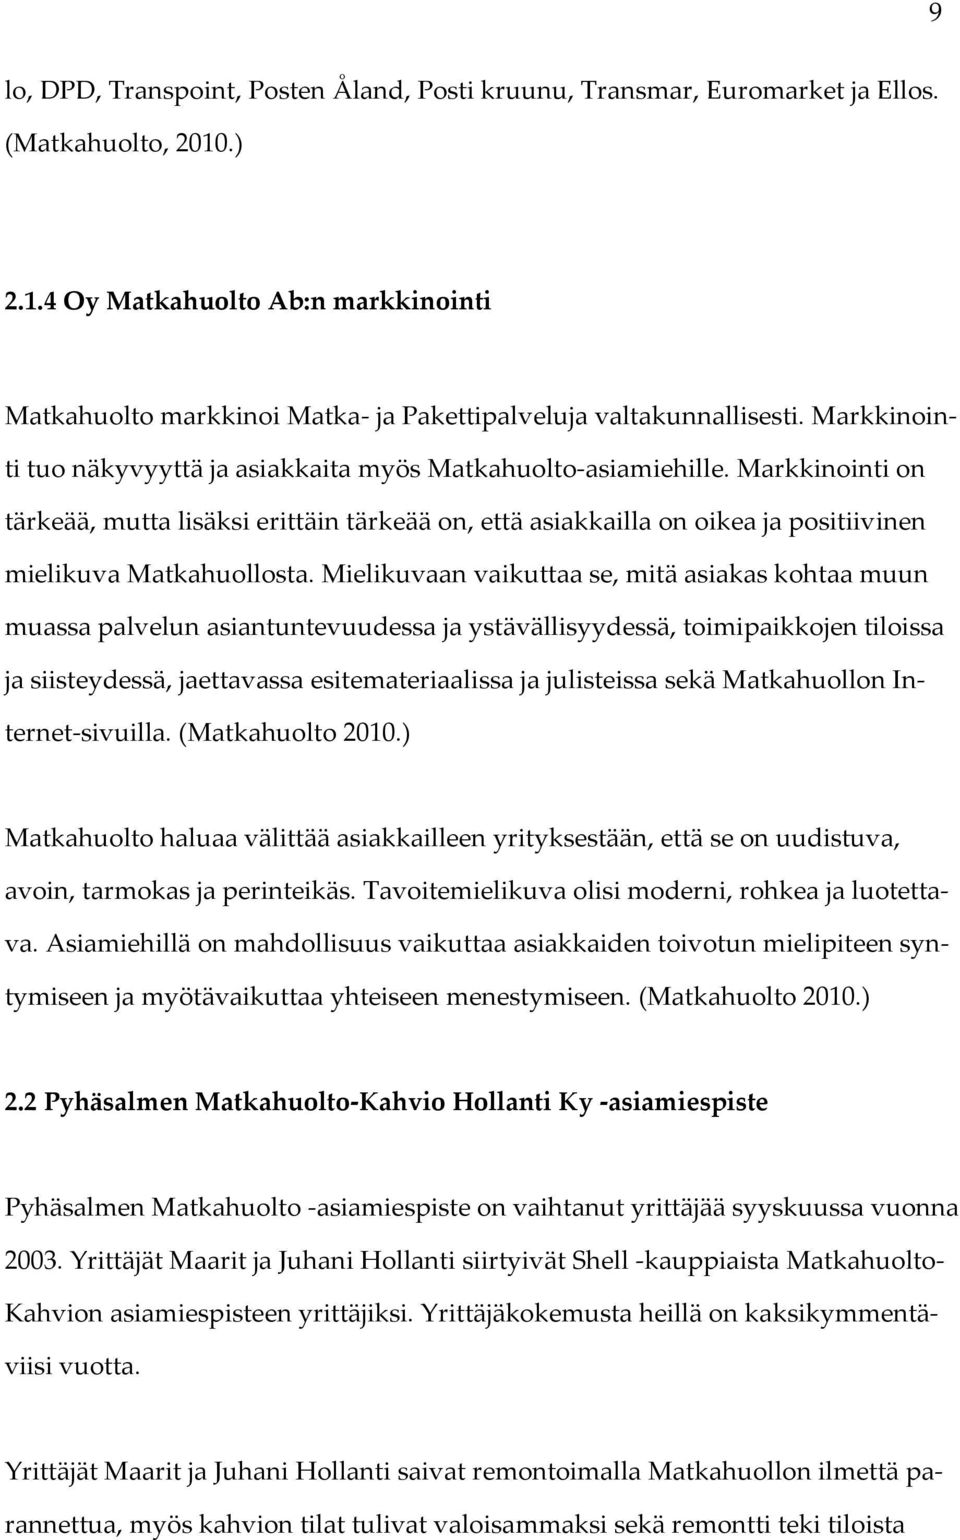 Marika Hollanti PYHÄSALMEN MATKAHUOLTO-KAHVIO HOLLANTI KY:N  ASIAKASTYYTYVÄISYYS - PDF Free Download